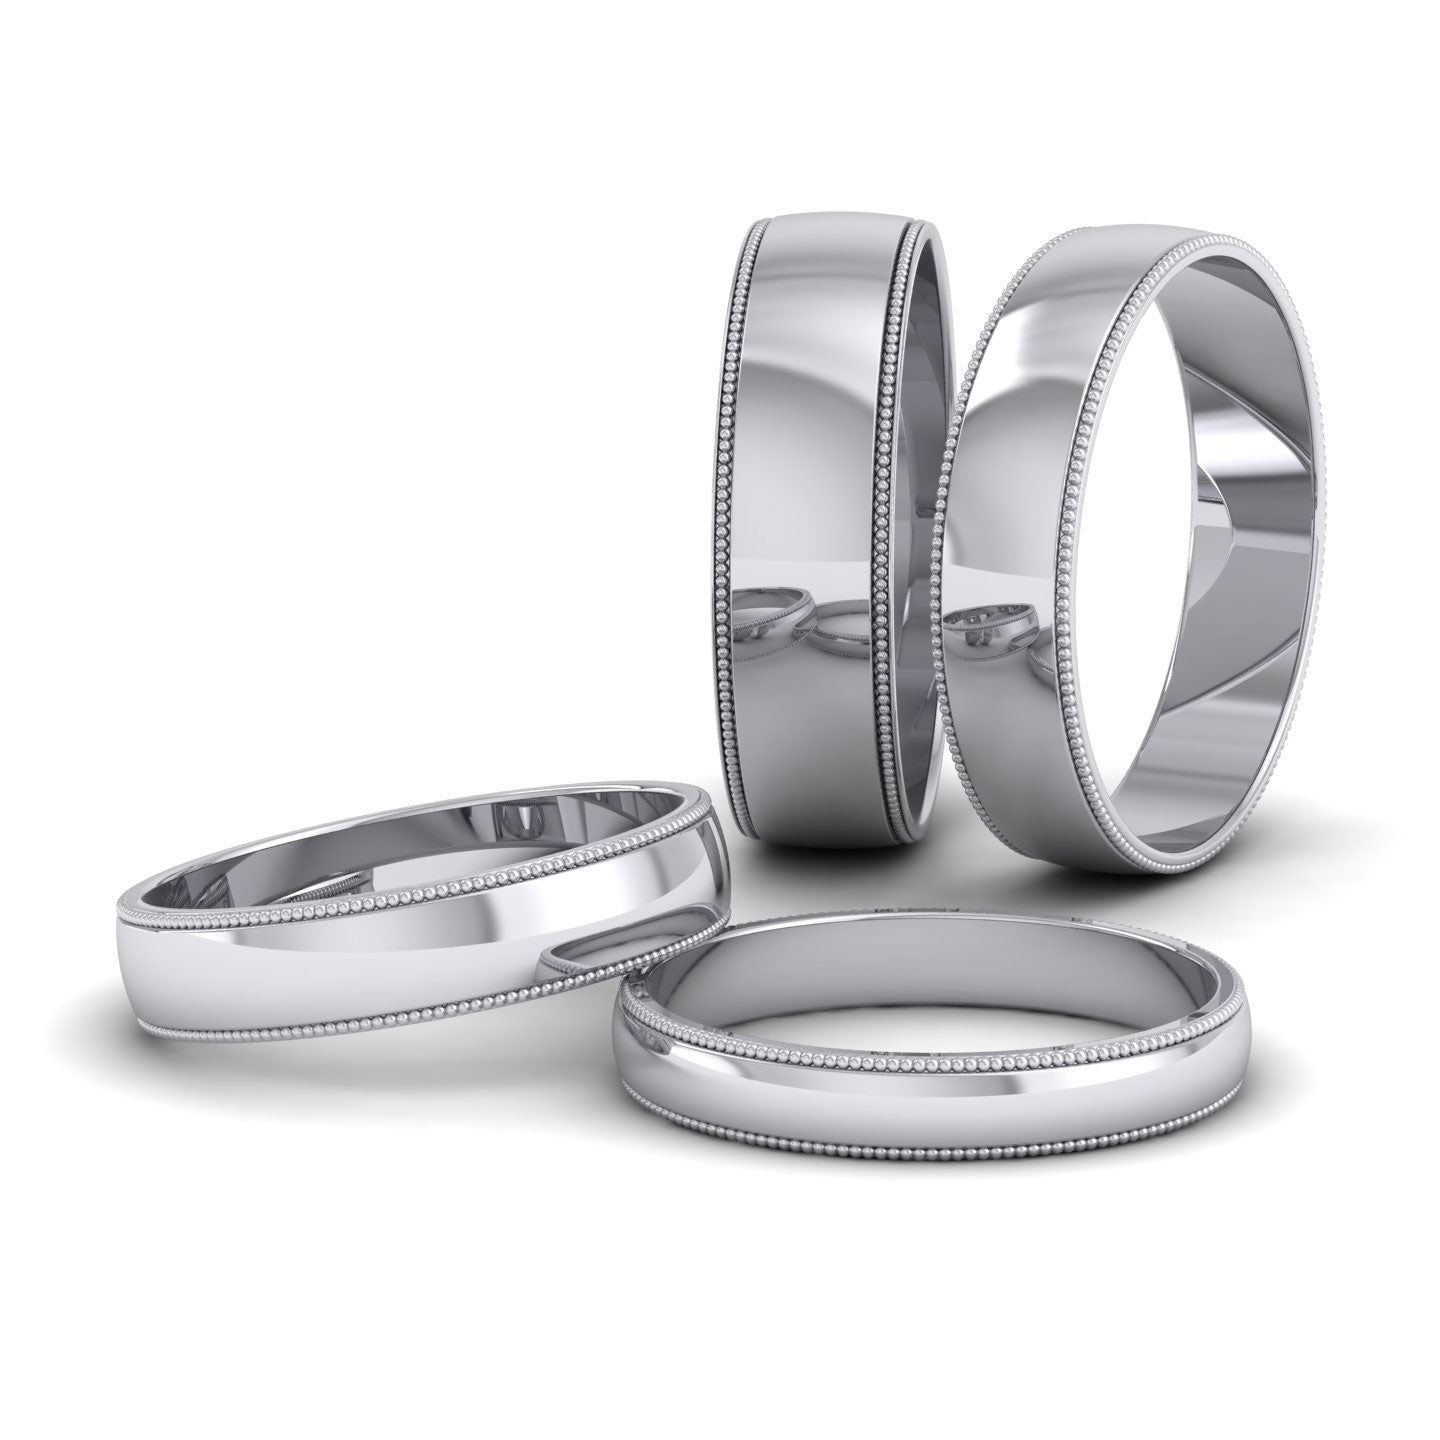 Millgrained Edge 950 Platinum 4mm Wedding Ring L